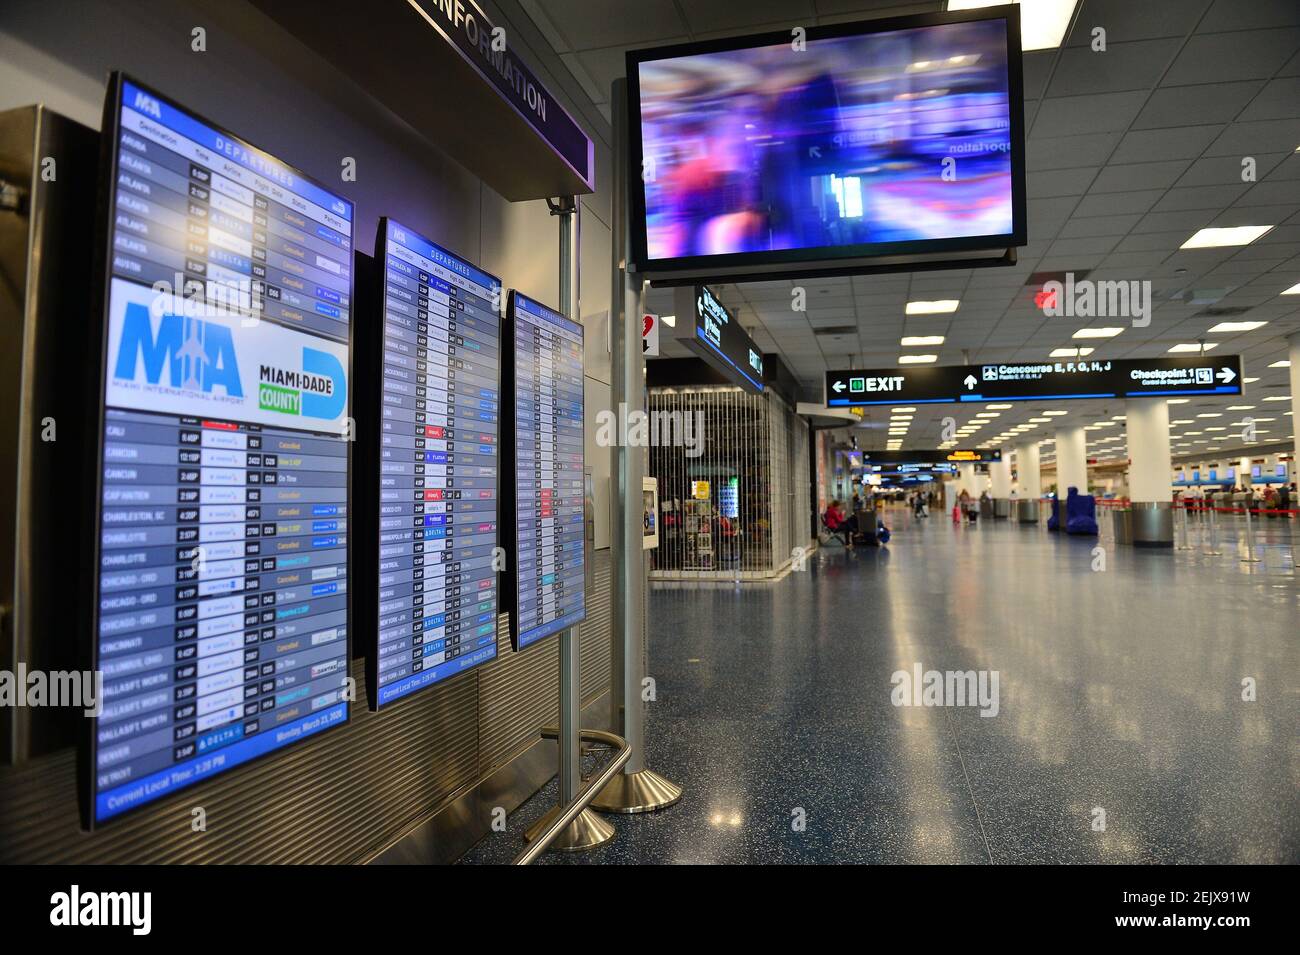 El tablero de información de vuelos enumera los vuelos cancelados en el  Aeropuerto Internacional de Miami (MIA) en medio de la pandemia COVID-19 el  23 de marzo de 2020 en Miami, Florida.